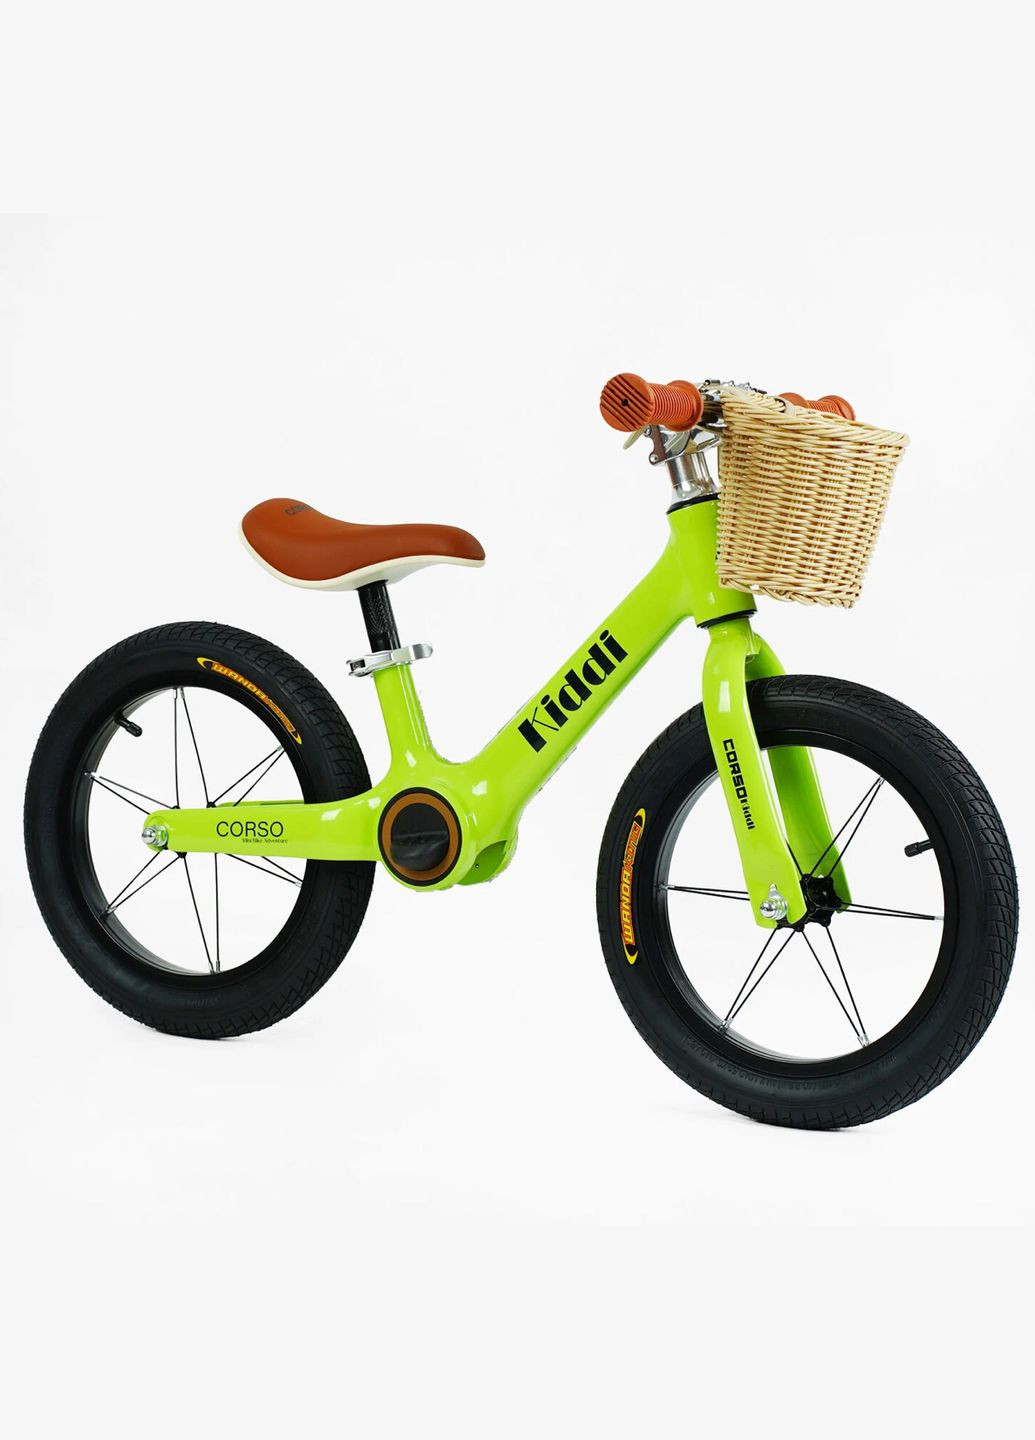 Дитячий велобіг KIDDI LT-14127. Магнієва рама, надувні колеса 14", підставка для ніг, кошик Corso (290254807)